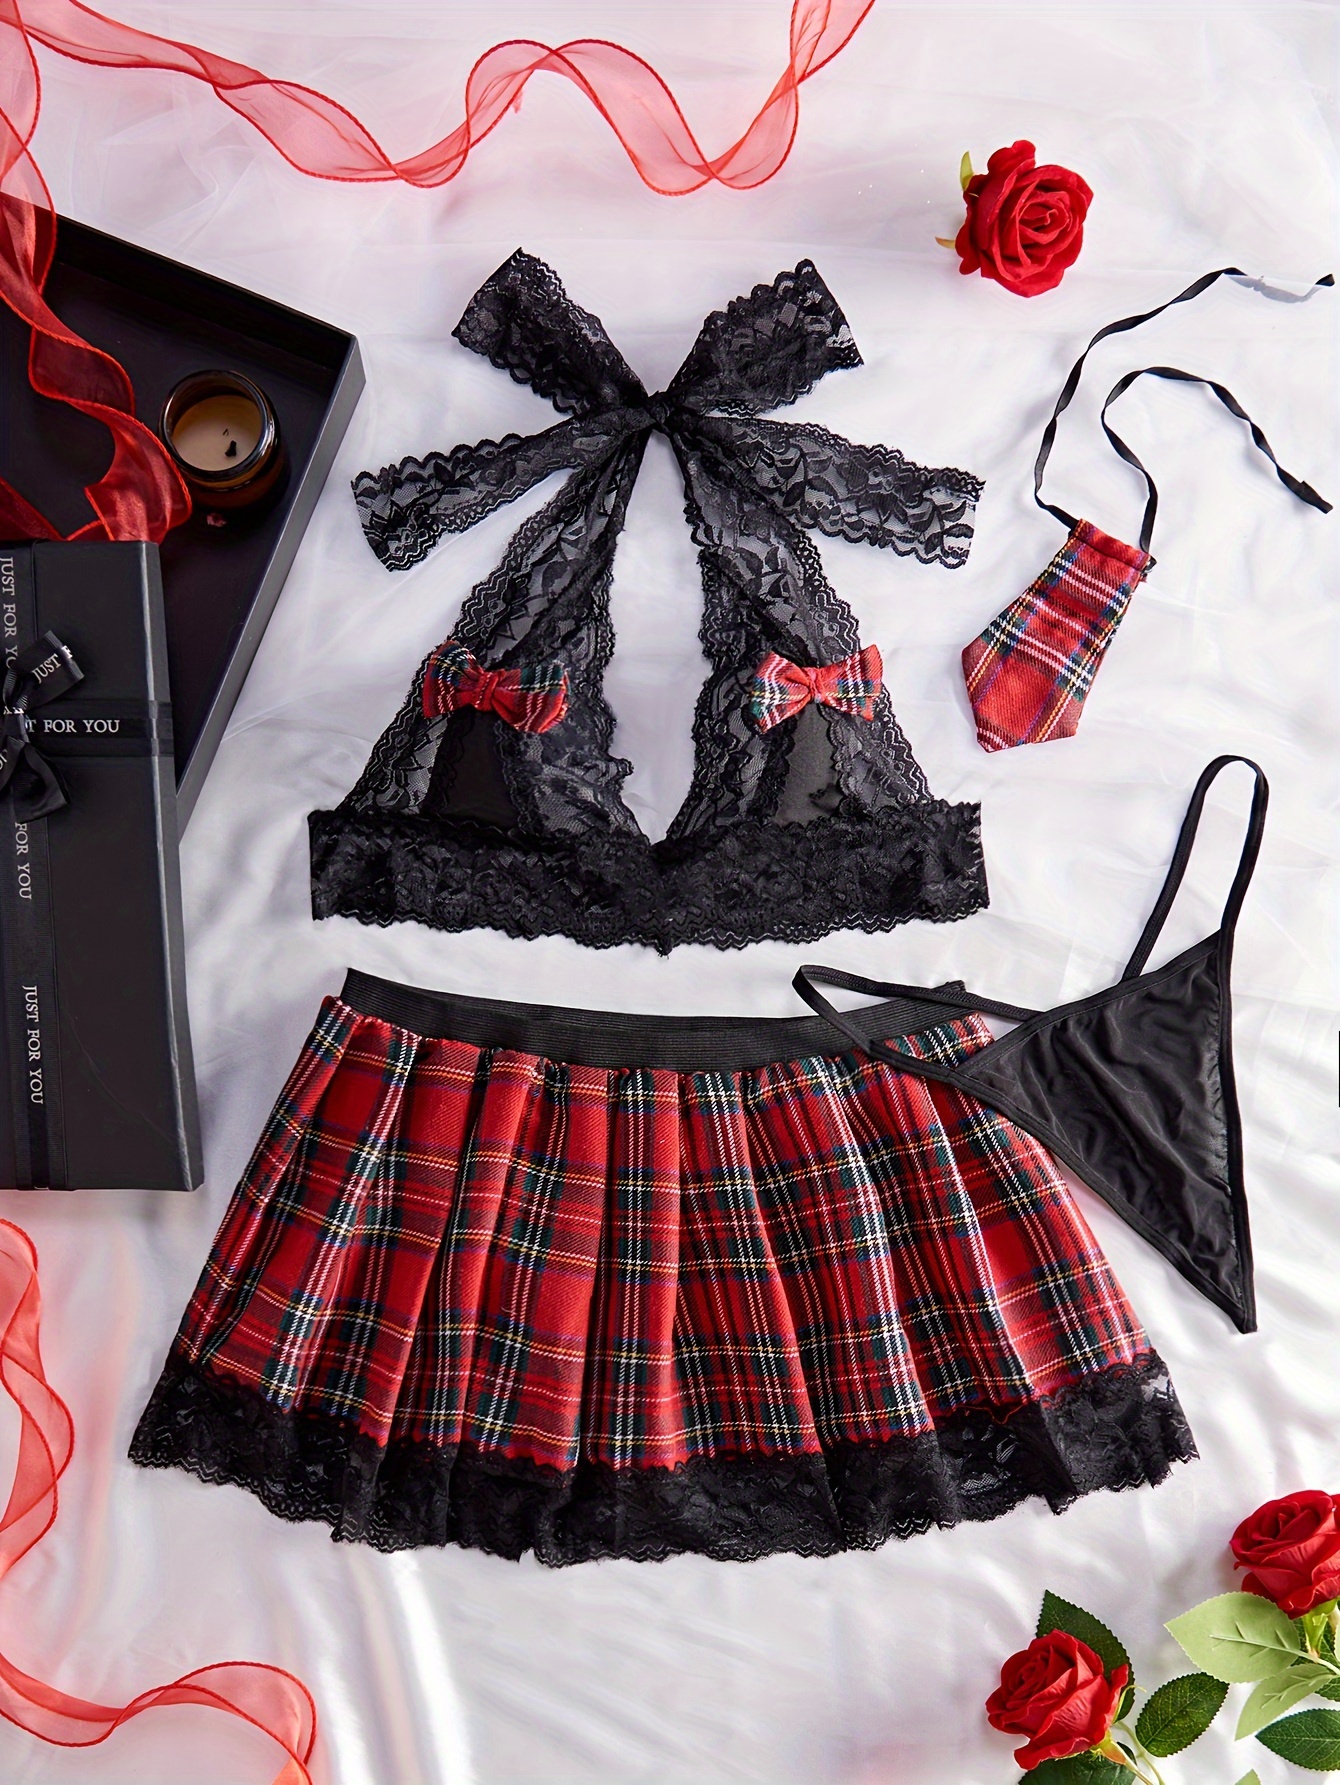 Lace Mesh Bra & Skirt, Bow Tie Push Up Bra & Sheer Mini Skirt Lingerie Set,  Women's Lingerie & Underwear